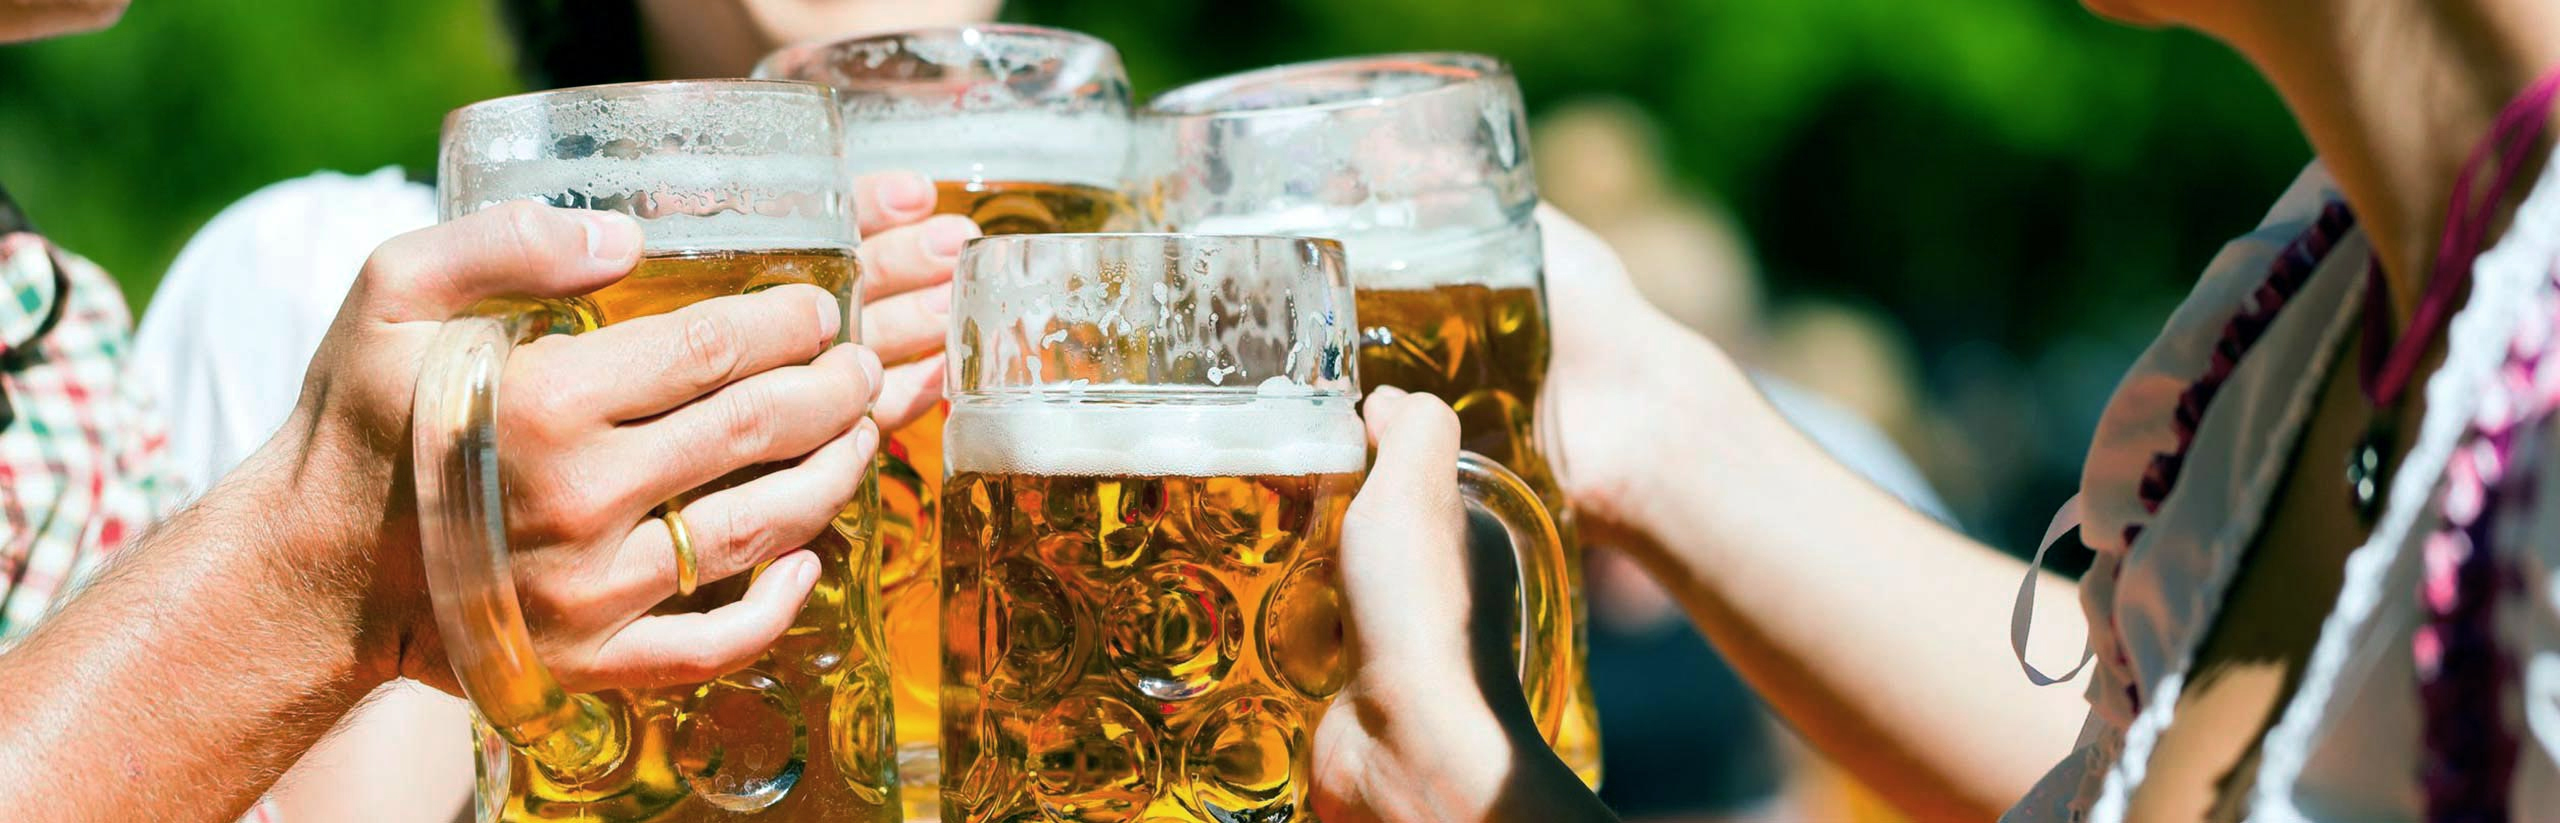 Engelbräu - Ein Bier so himmlisch wie sein Name